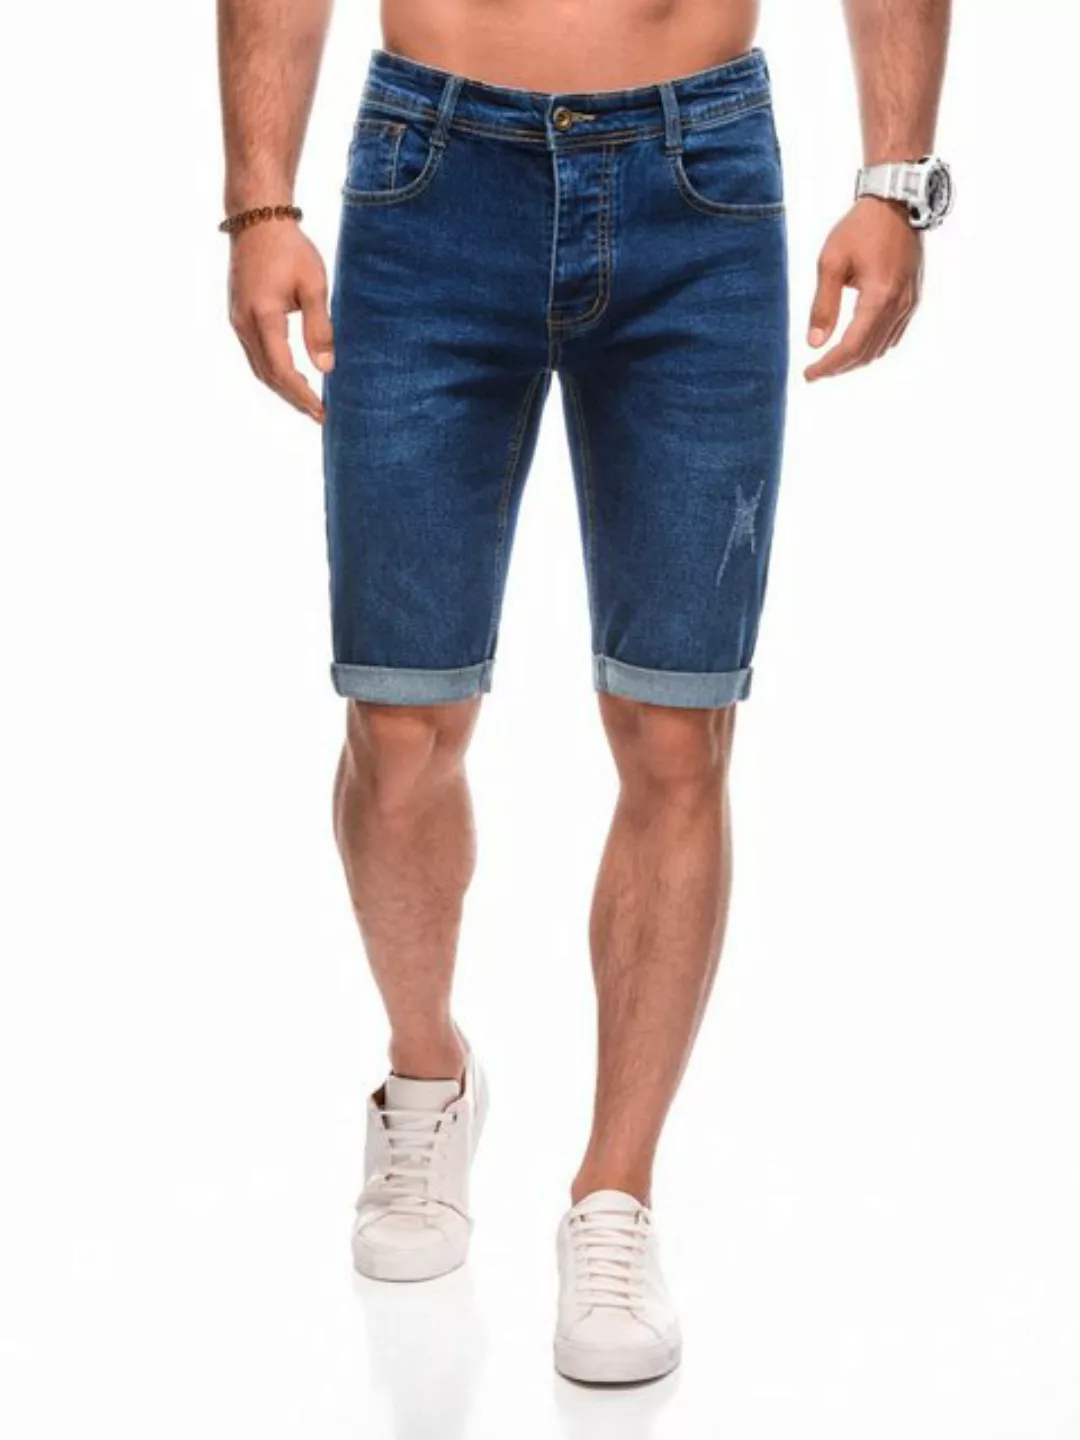 Edoti Jeansshorts Denim- Shorts für Männer Regular Fit günstig online kaufen